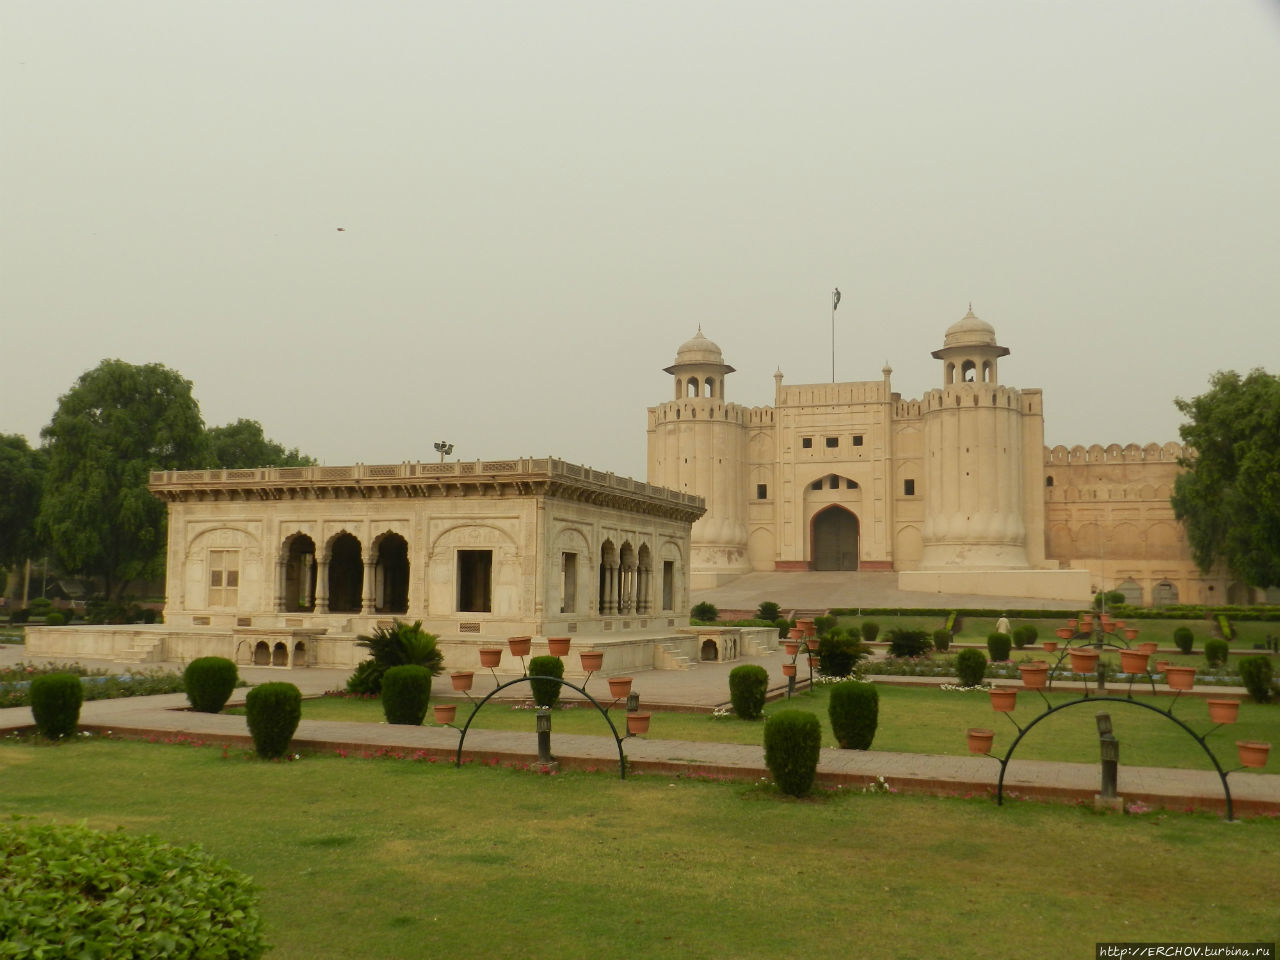 Пакистан. Ч-2. От гуннов до Великих Моголов. Мечеть Бадшахи Лахор, Пакистан